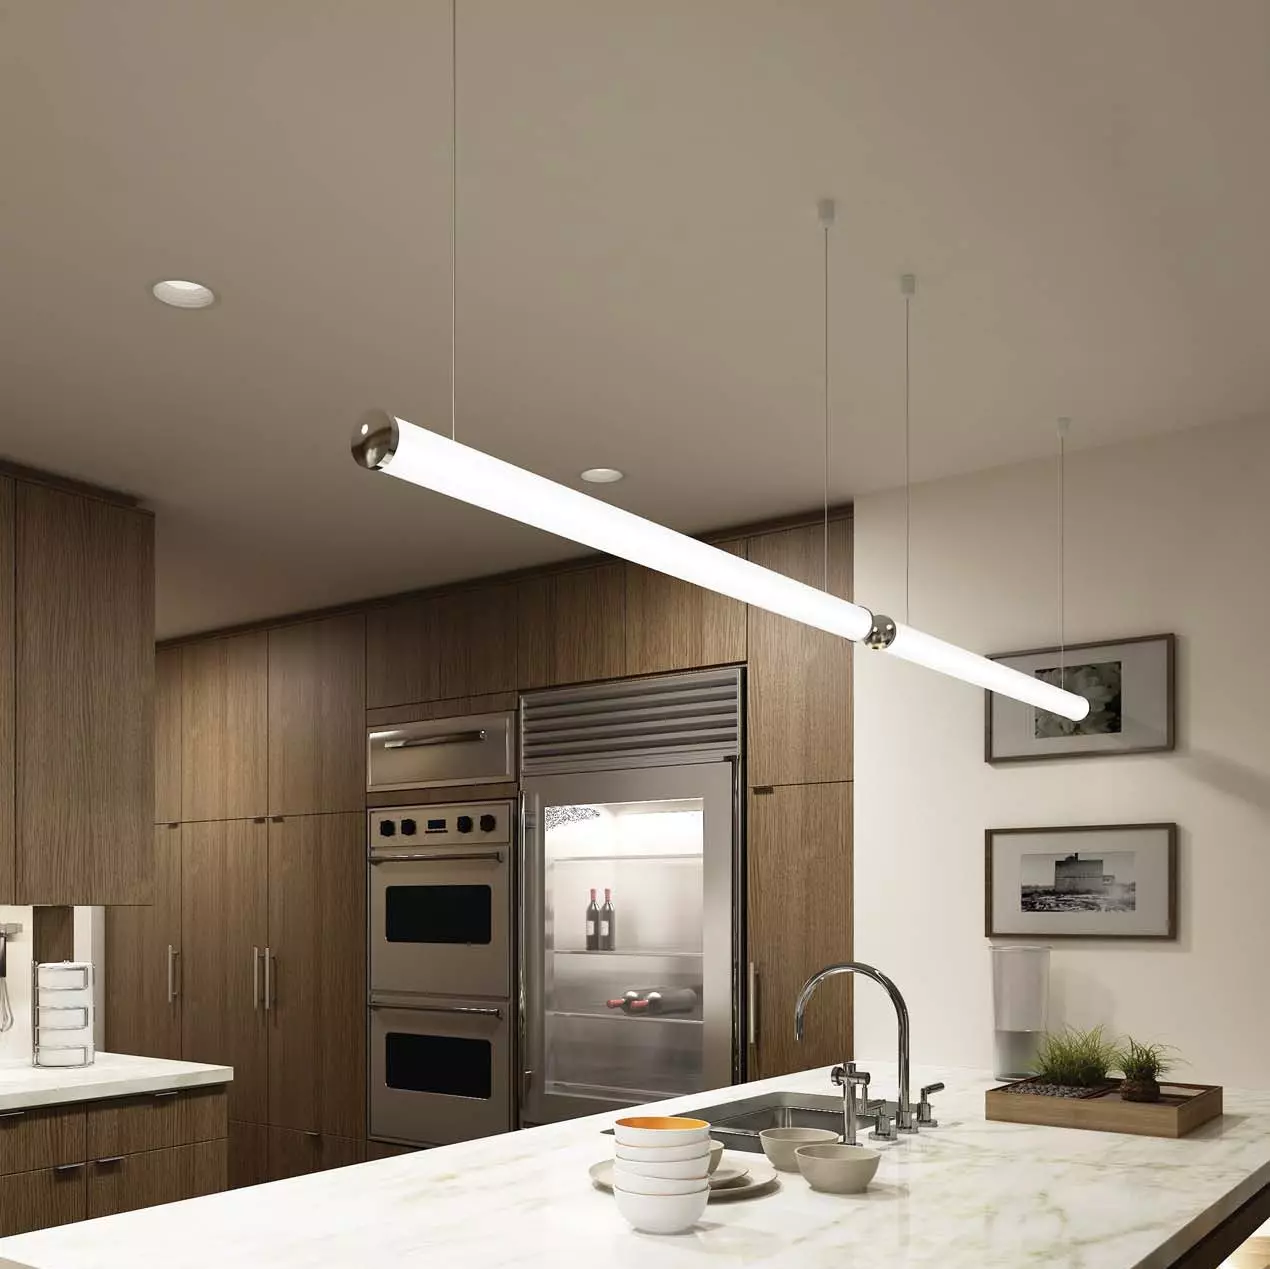 Lampade da cucina (74 foto): Sconosco da cucina e lampade a muro con lampade a muro, sovraccarico e lampade da traccia e soffitto, altre opzioni 21003_38